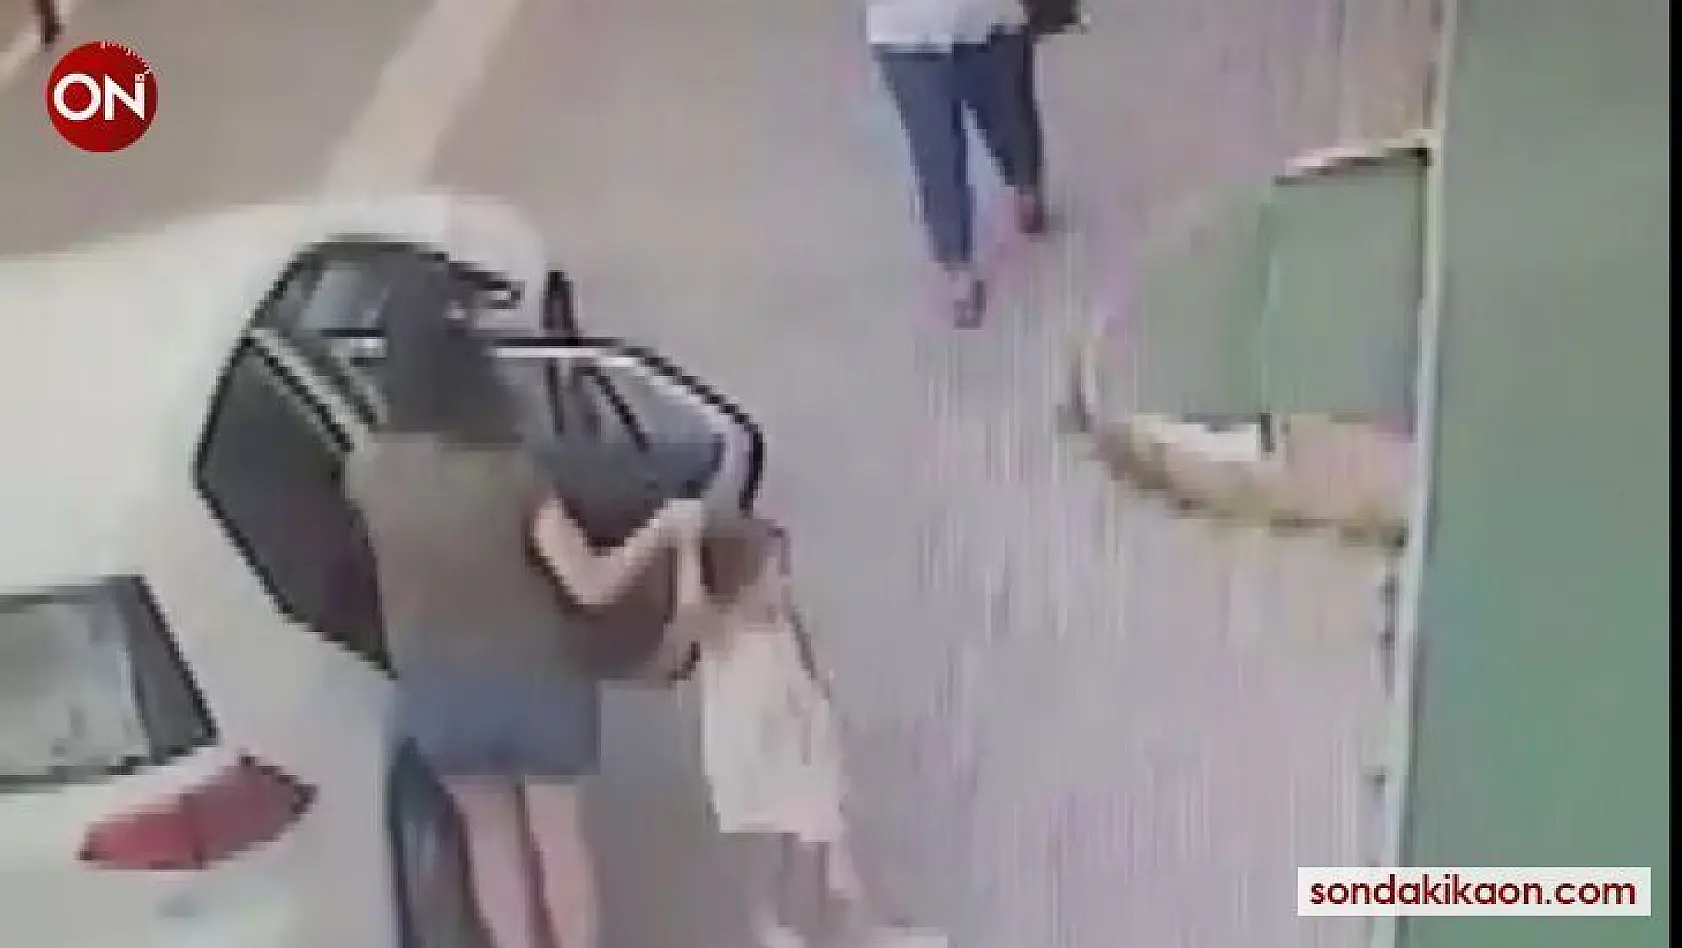 (Özel) Küçük kızın kolundan düşen altın künyeyi alan kişi güvenlik kameralarına yakalandı